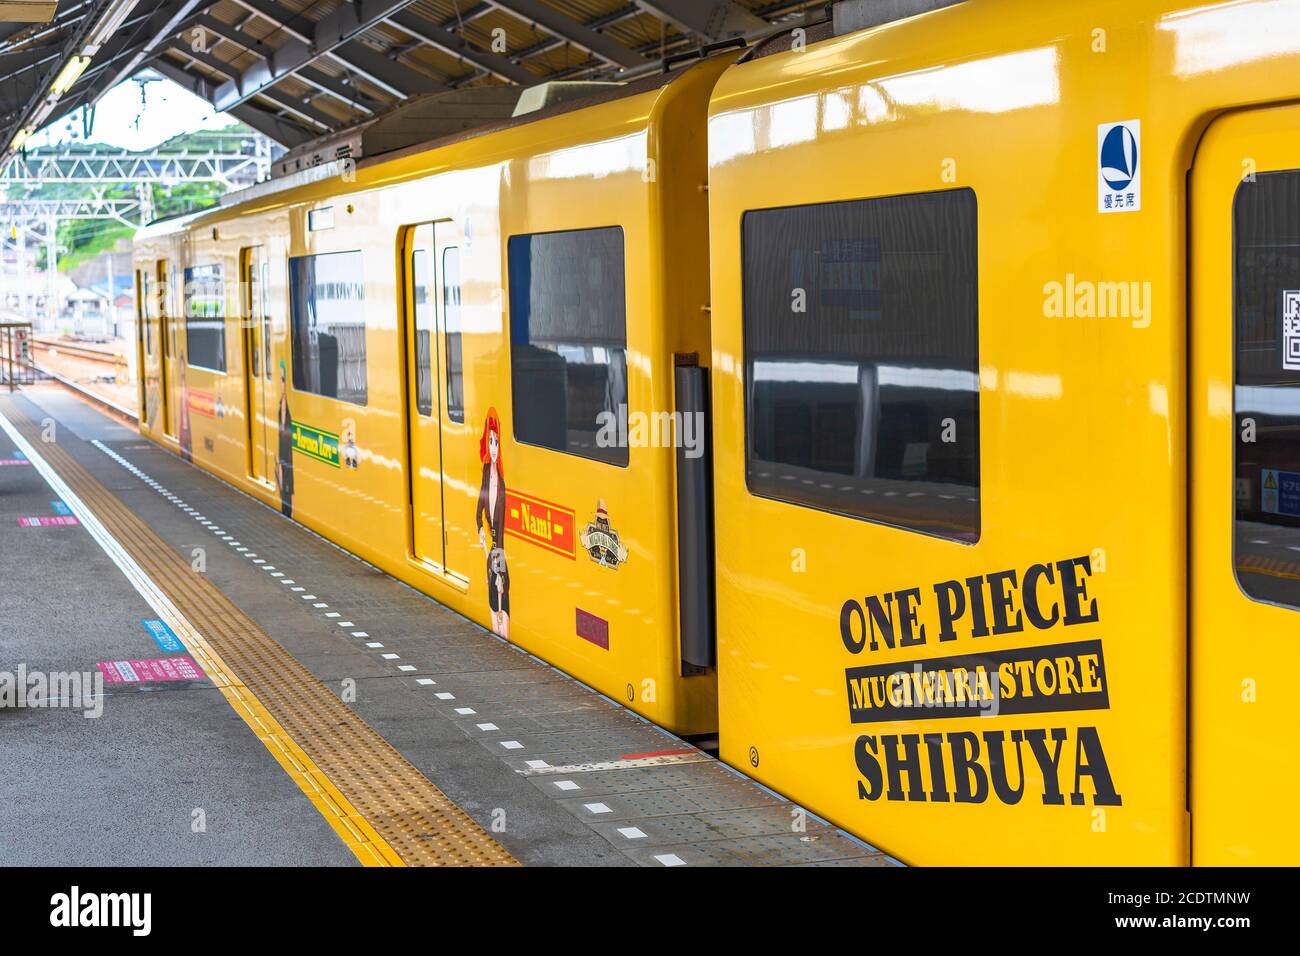 kanagawa, giappone - luglio 19 2020: Treno giallo della linea Yokosuka avvolto con adesivi pubblicitari di manga e personaggi anime Nami, Zoro e Luffy per Foto Stock